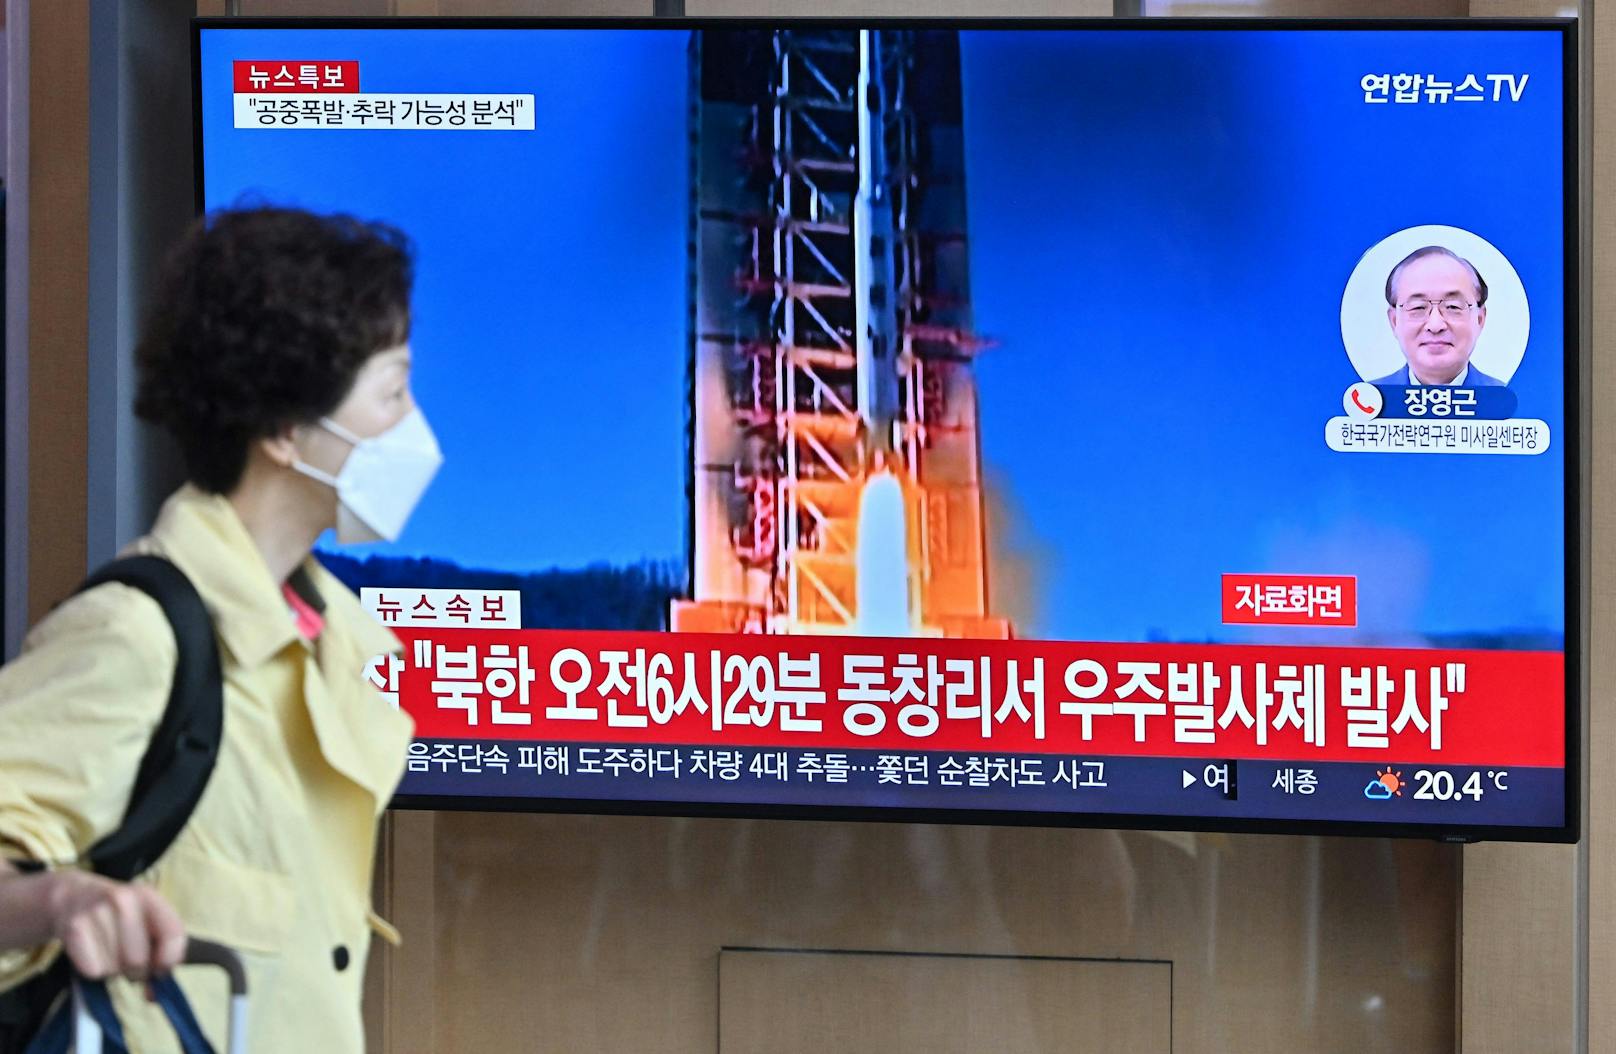 Der Raketenstart sorgte in Seoul kurzzeitig für Unruhe.&nbsp;